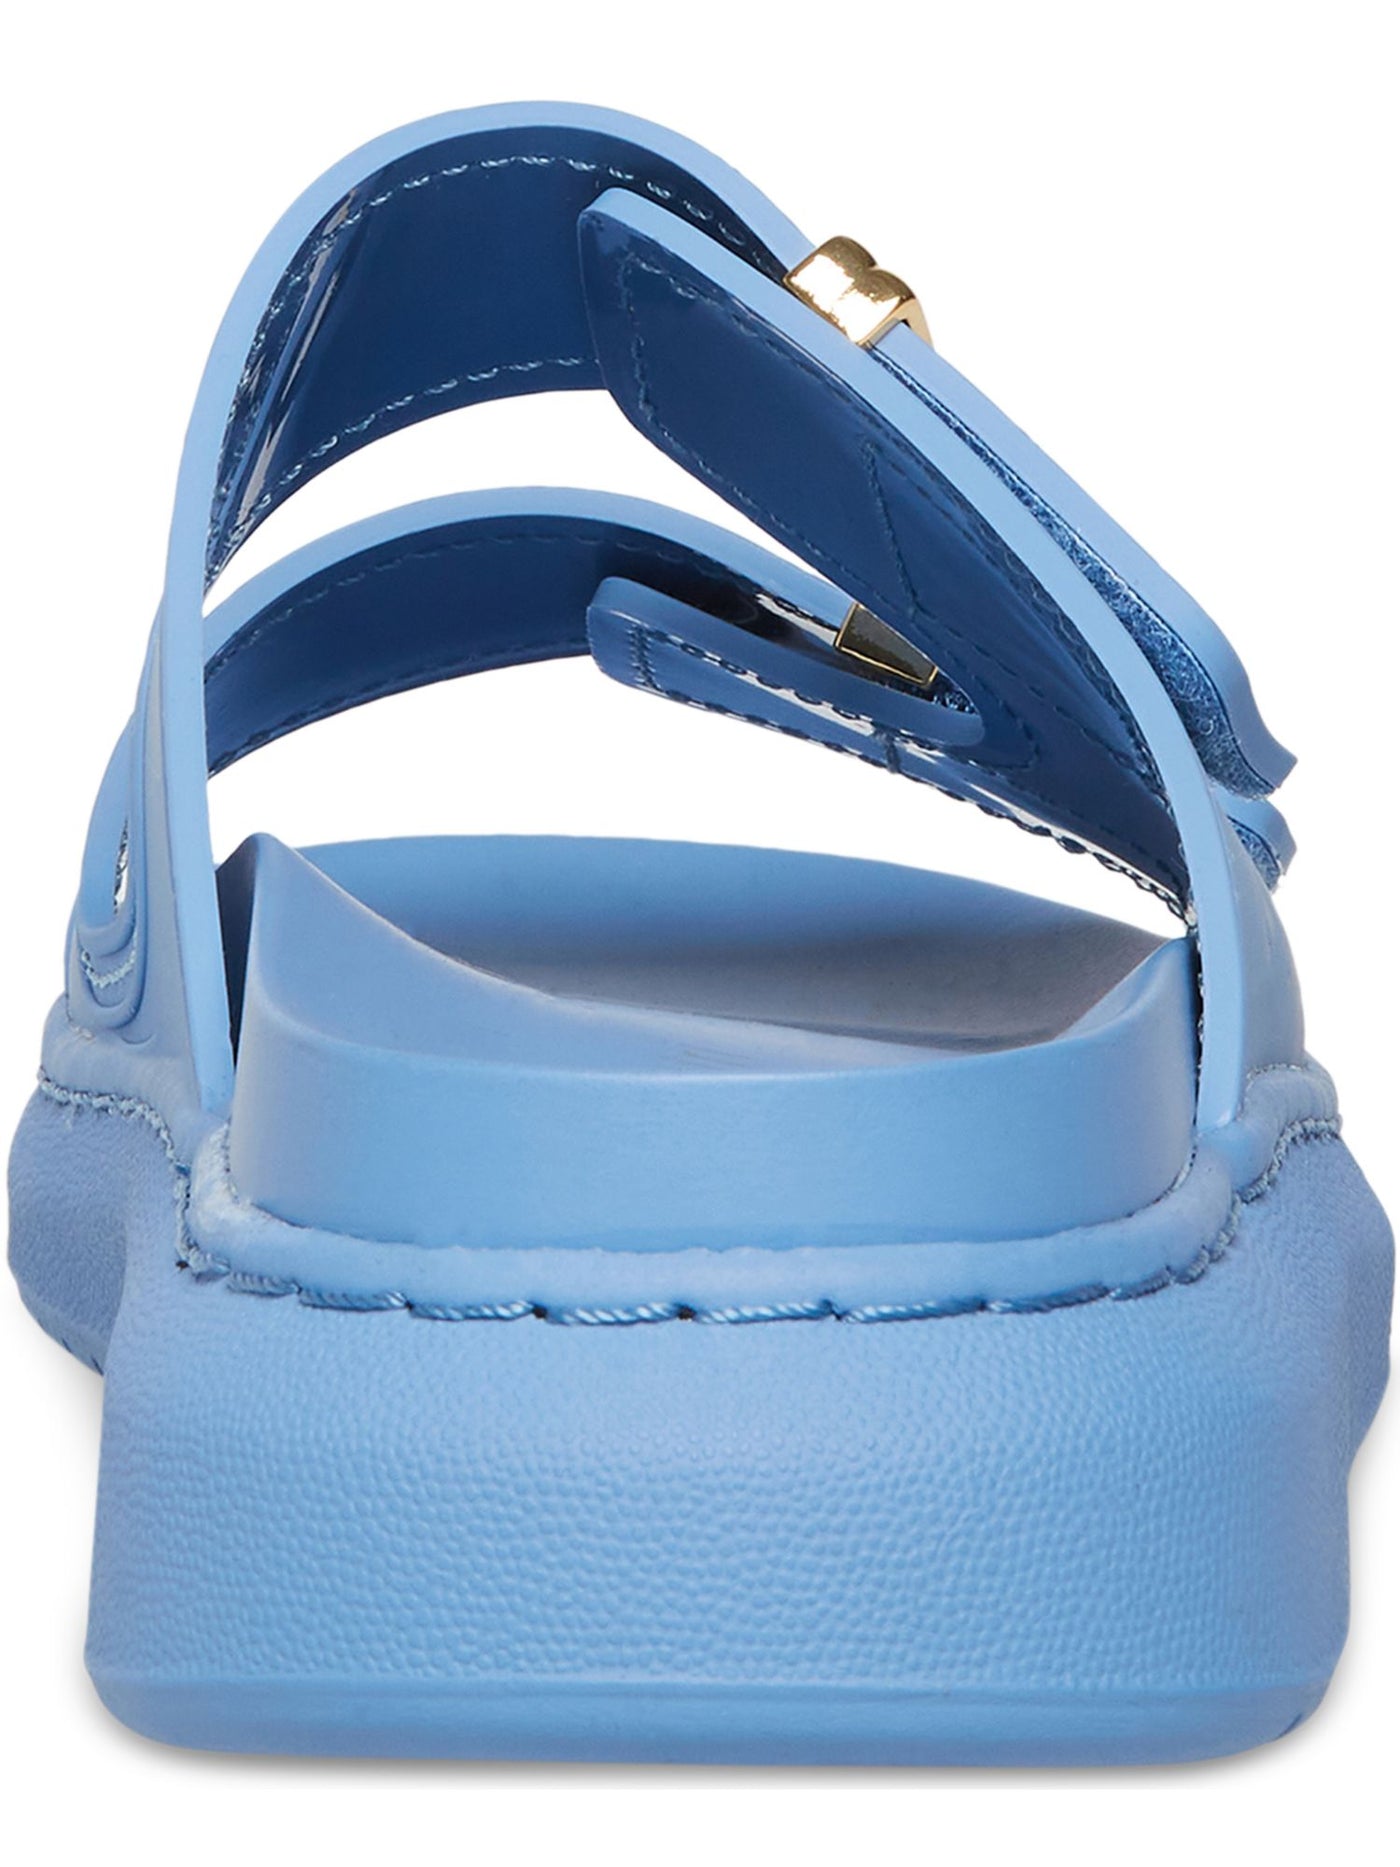 MADDEN GIRL Womens Blue Adjustable Strap Comfort Kingsley Round Toe Platform Slip On Slide Sandals Shoes 6 M